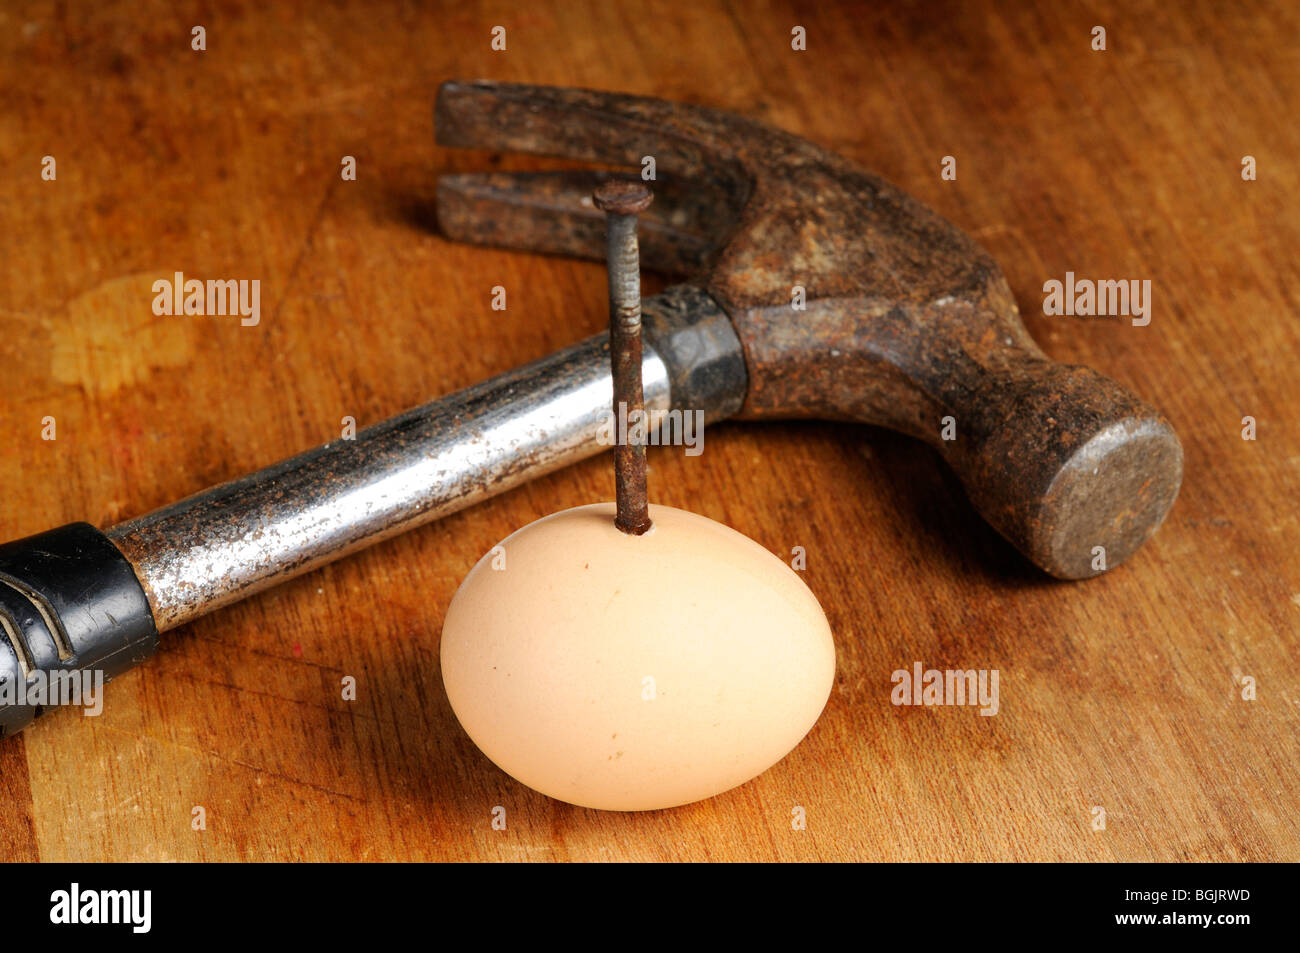 Fotografía de Stock de un clavo oxidado clavados a través de un huevo. Un viejo martillo está tumbado junto al huevo. Foto de stock